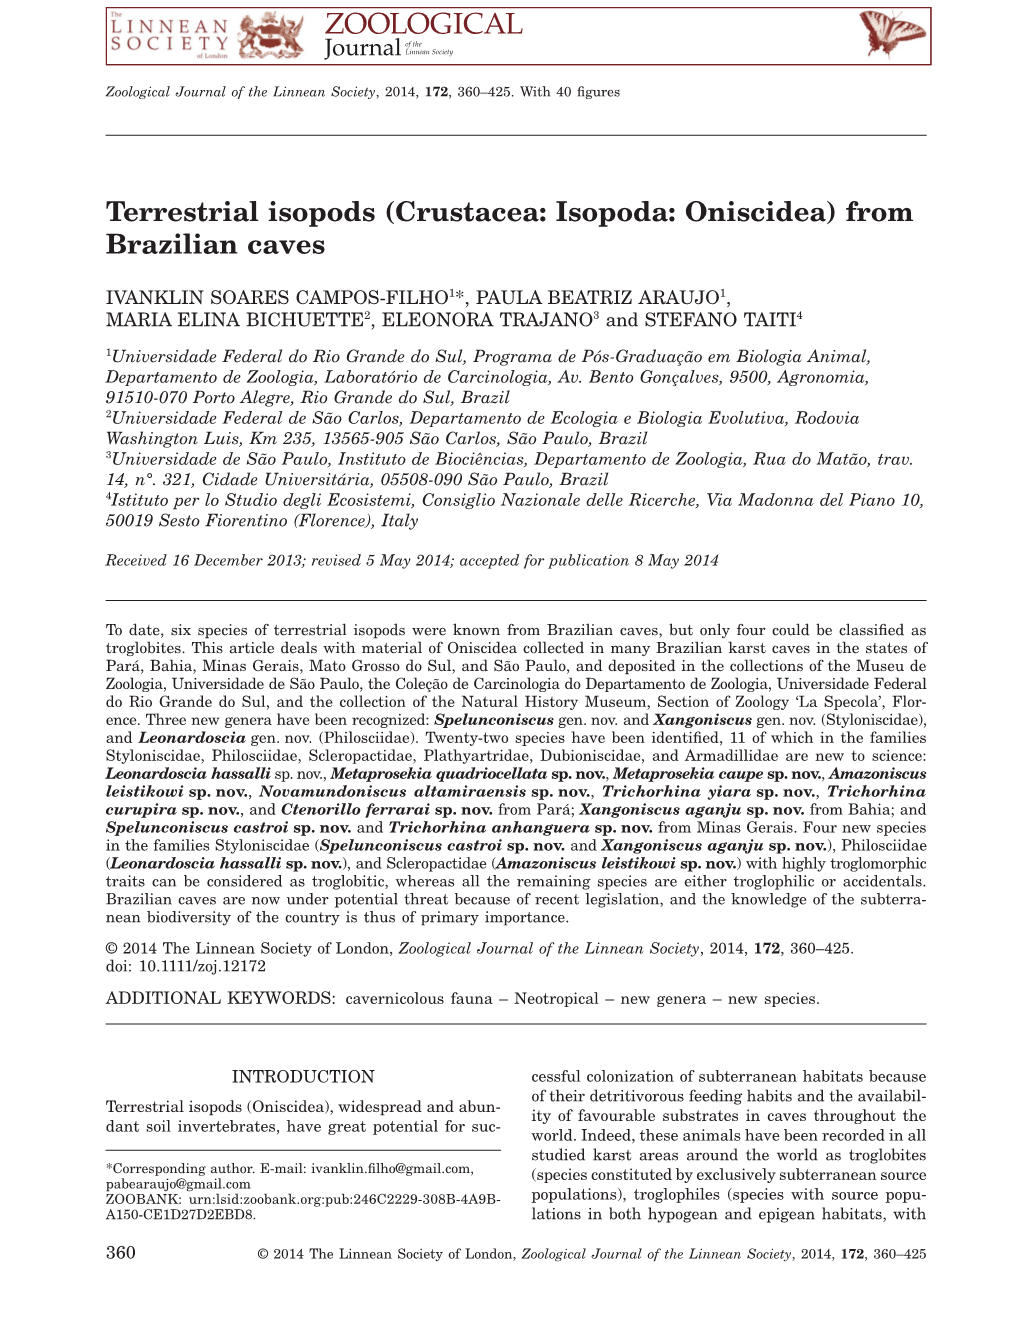 Terrestrial Isopods (Crustacea: Isopoda: Oniscidea) from Brazilian Caves